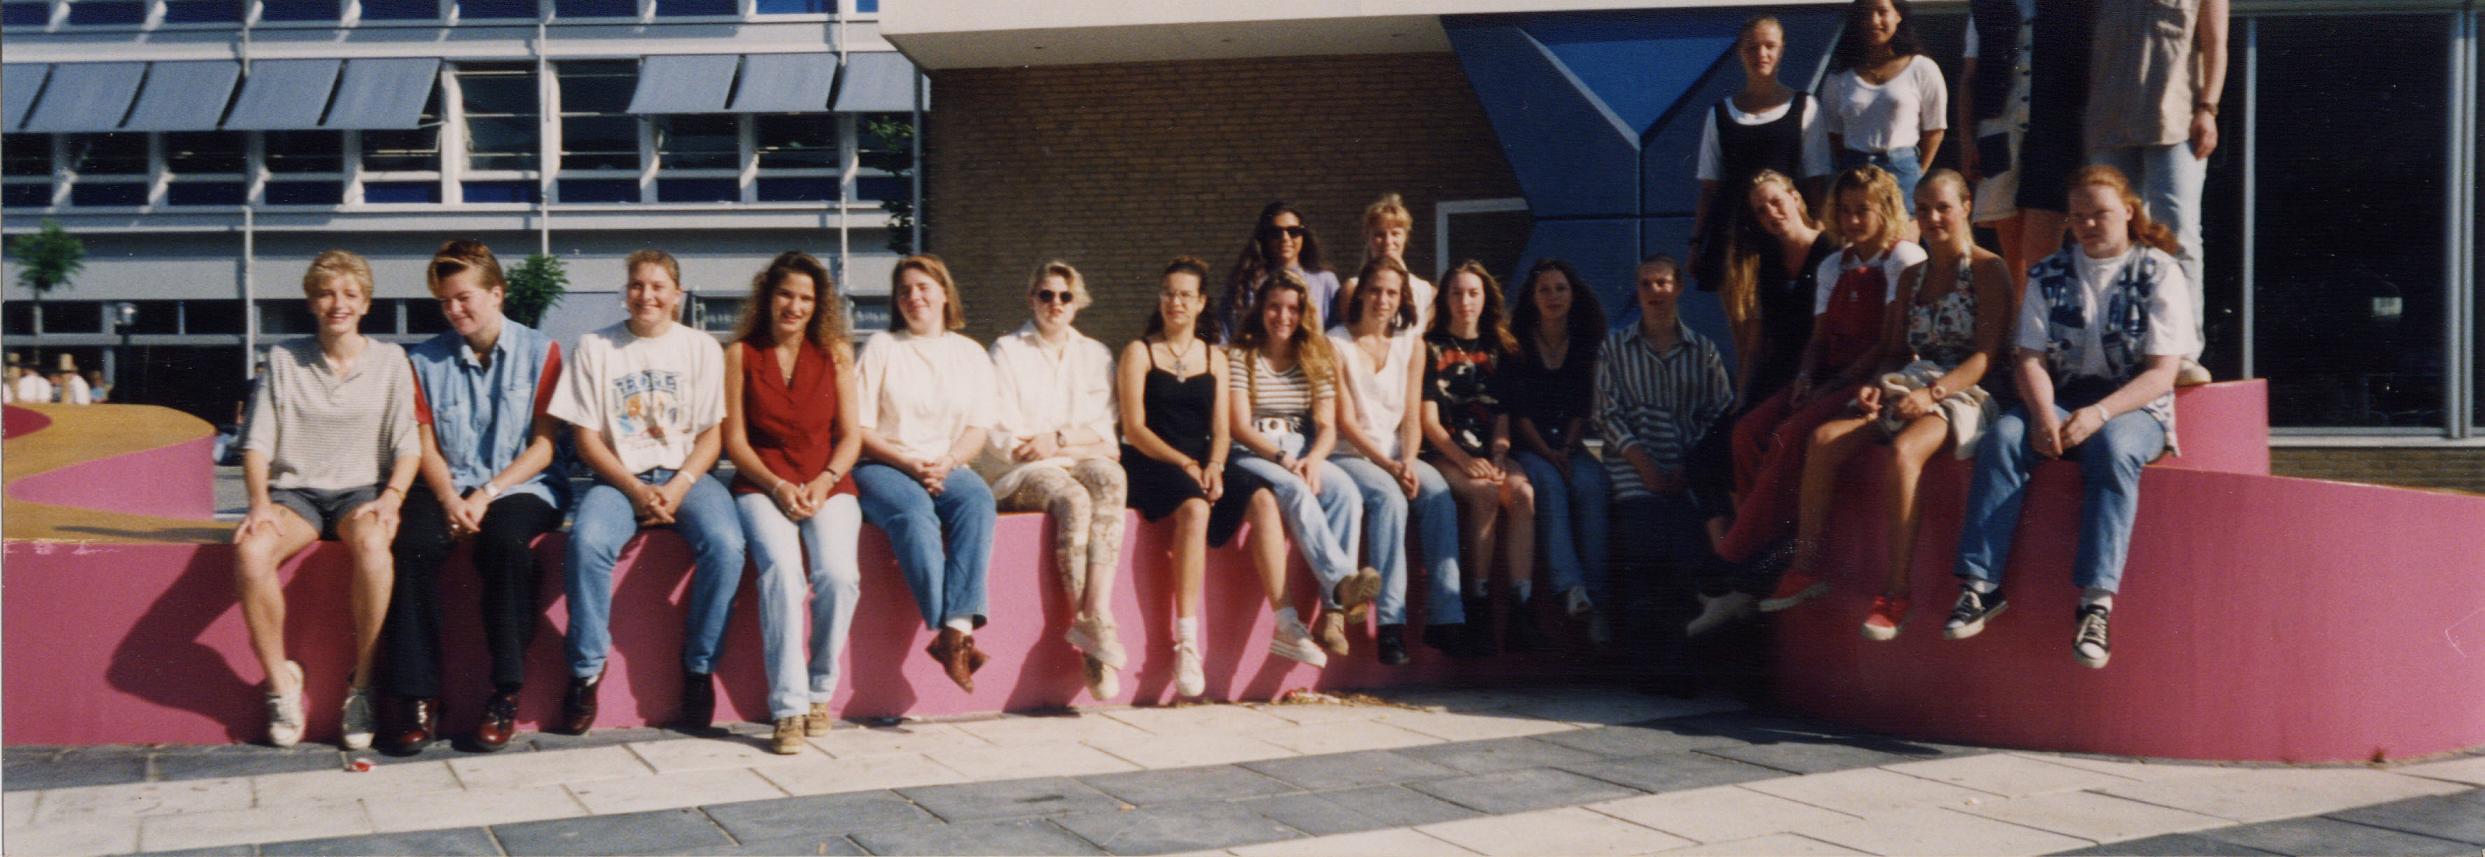 westfriesland college foto